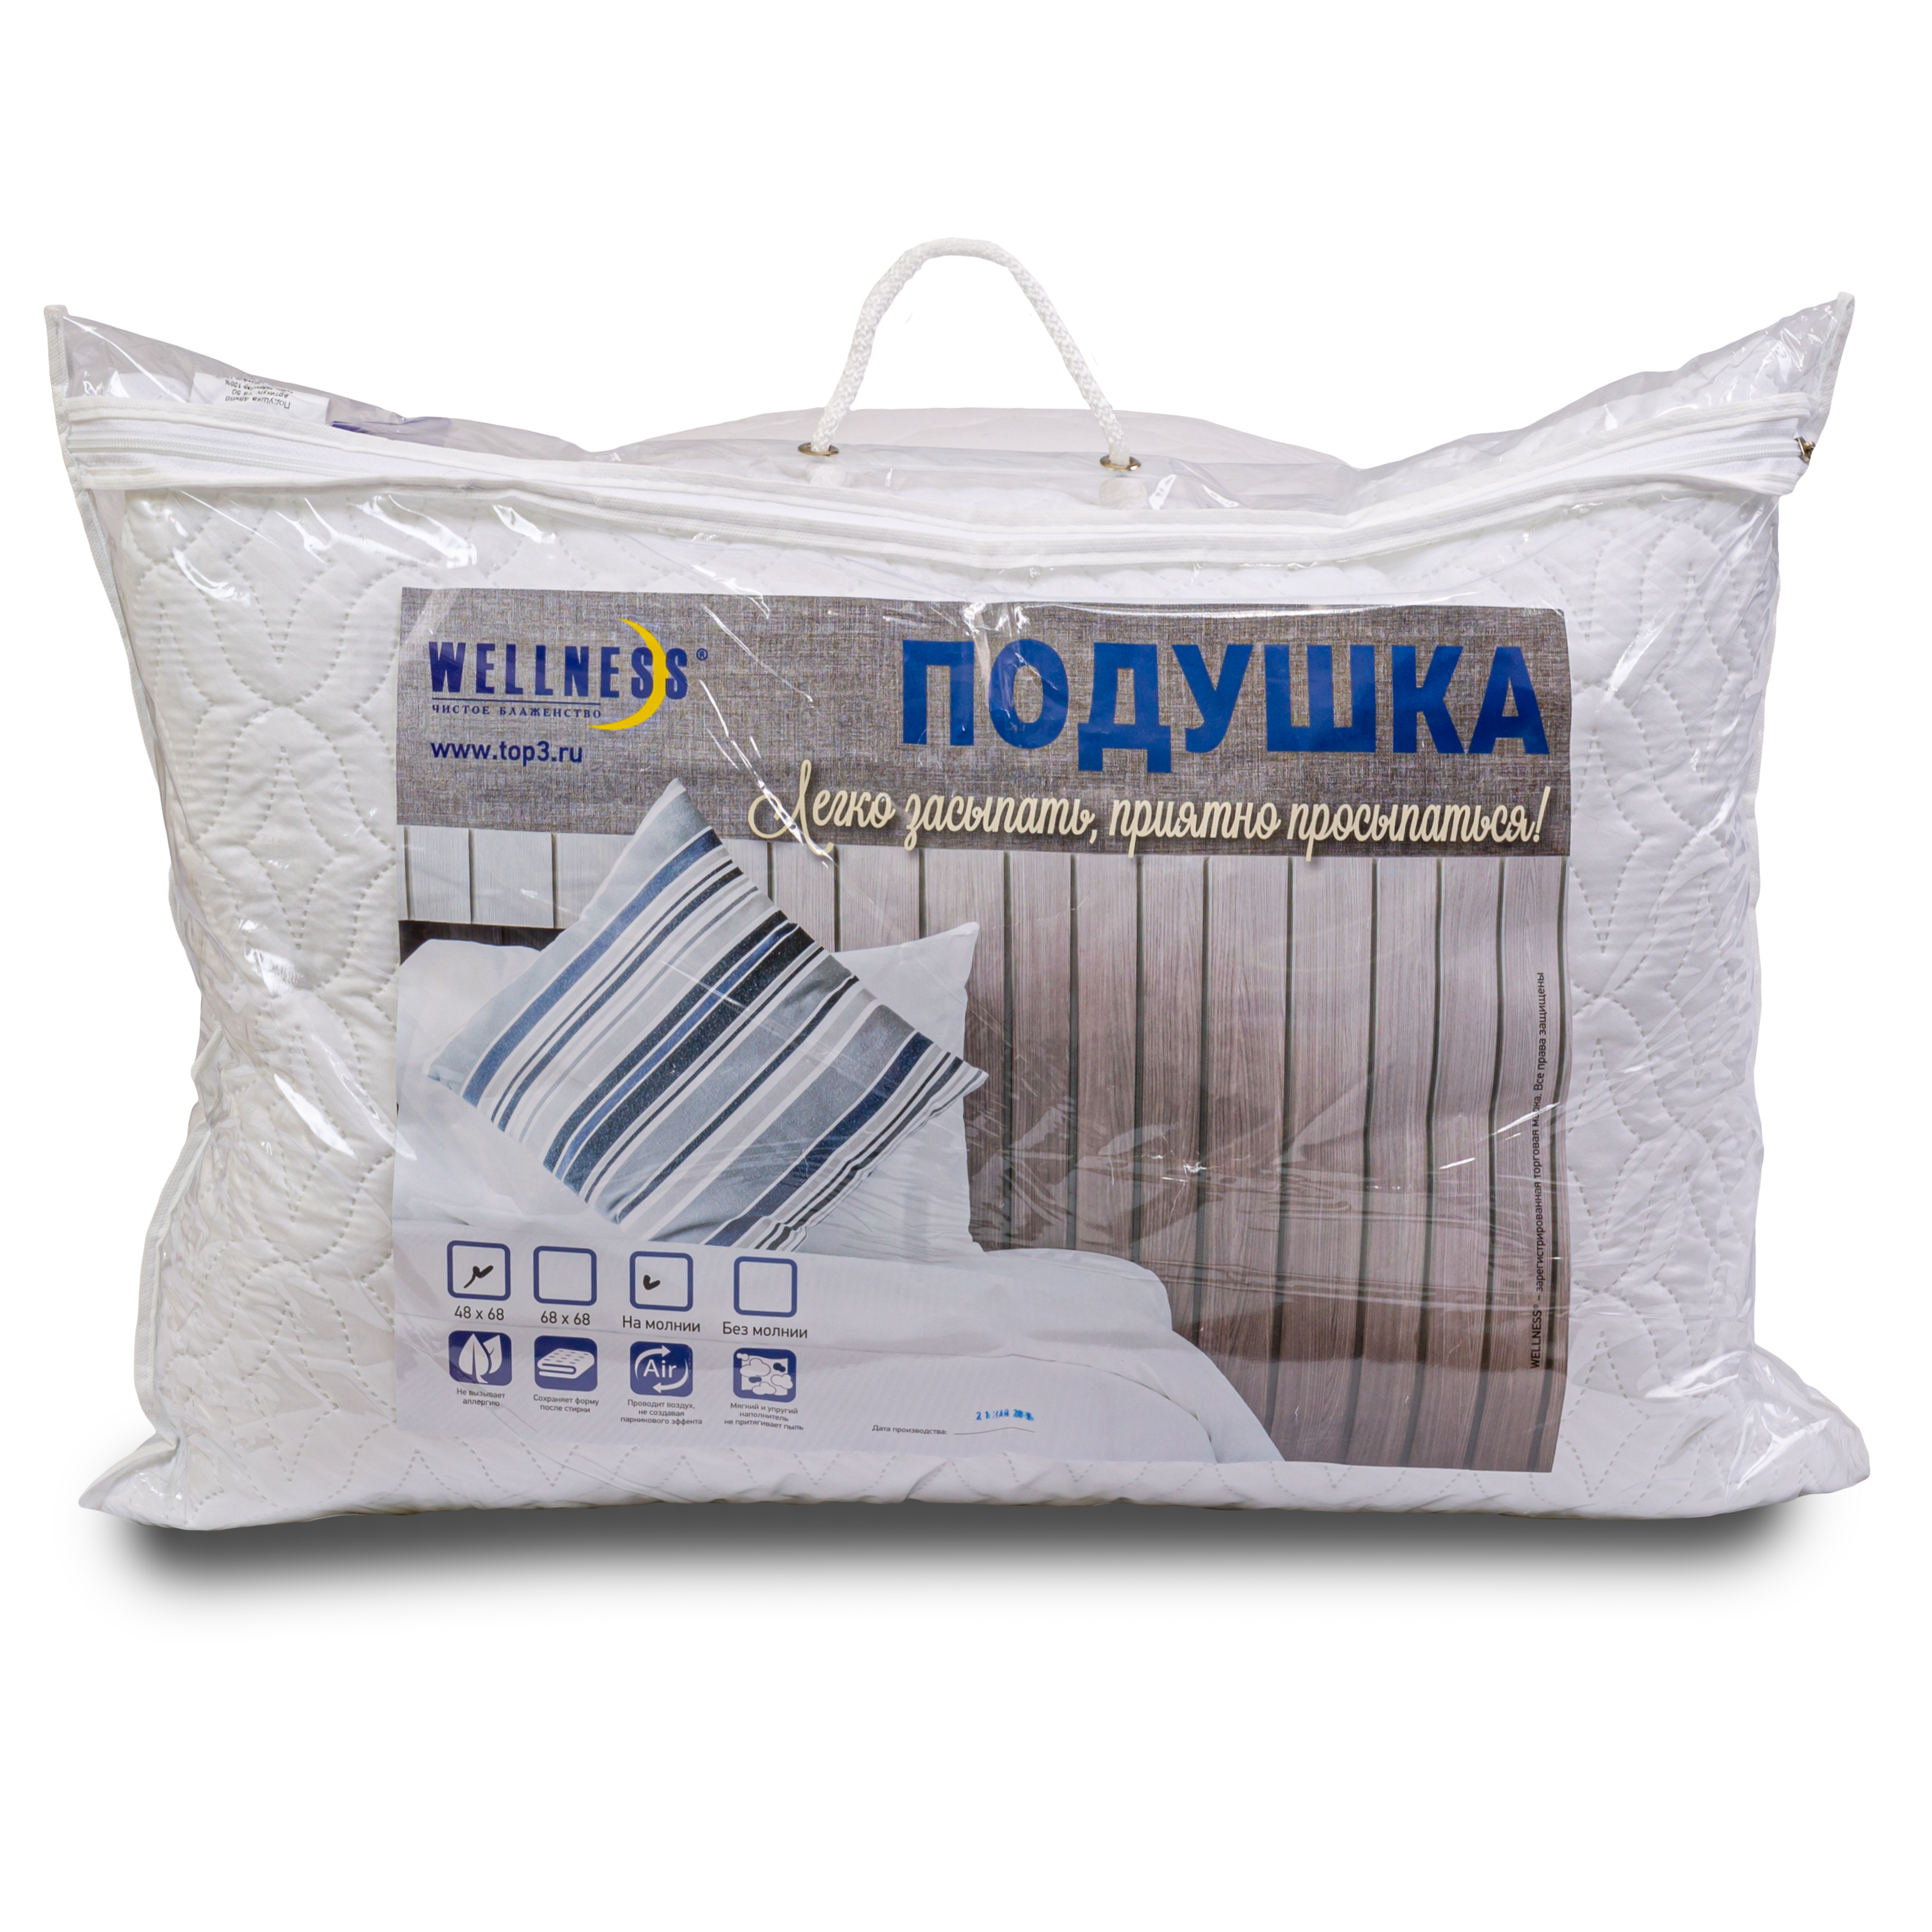 Подушка для сна Wellness TS50 в сумке полиэстер 68x48 см